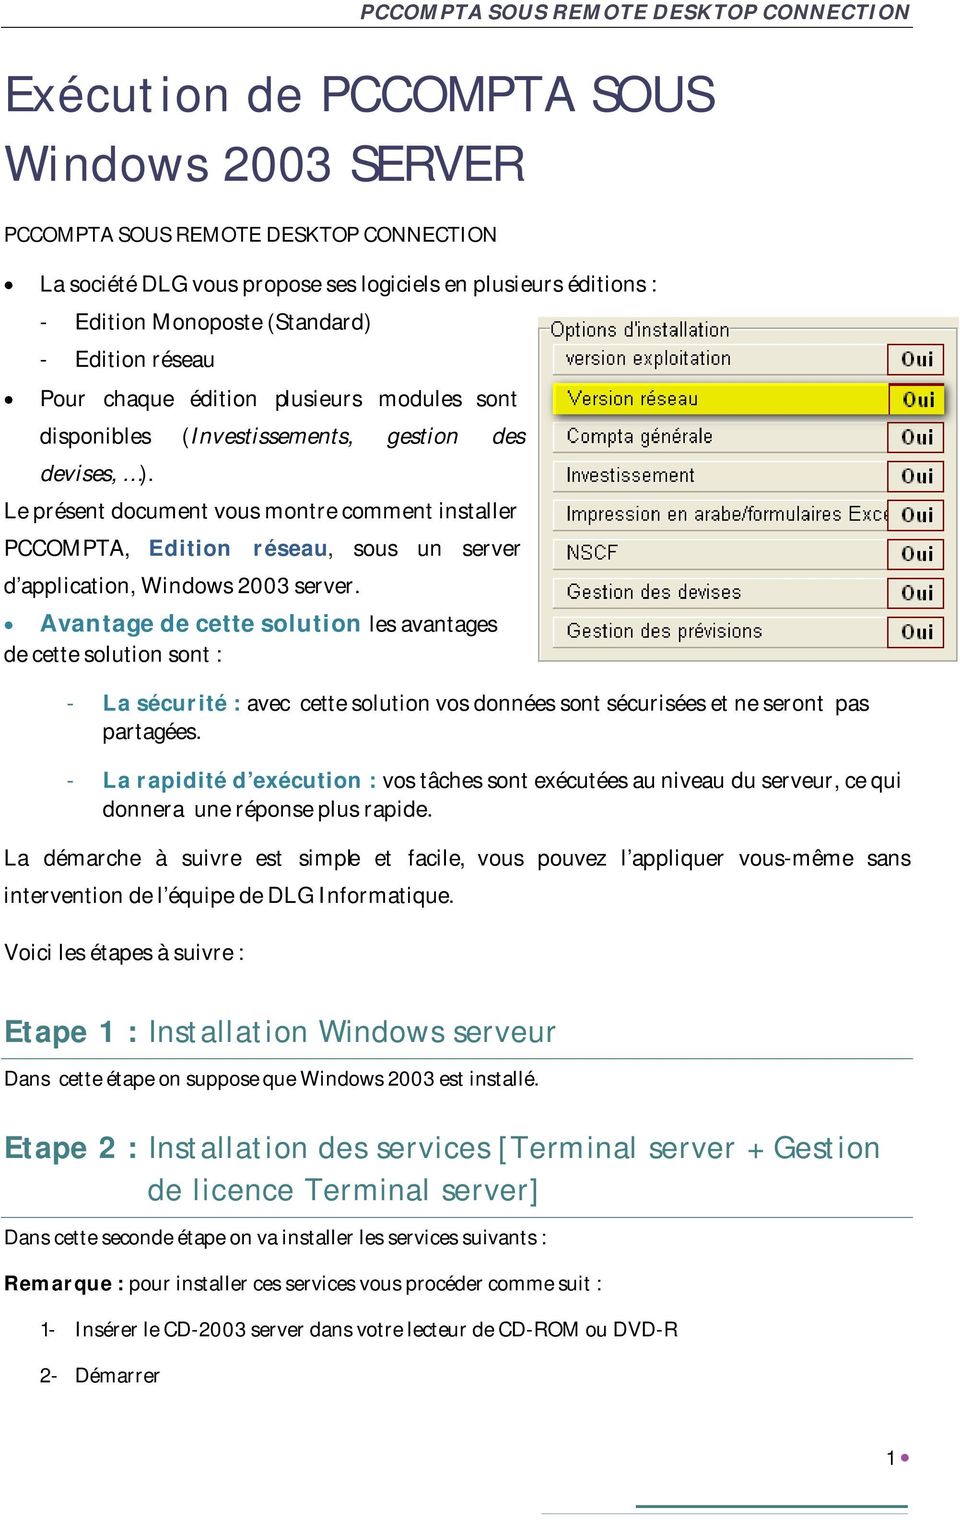 Le présent document vous montre comment installer PCCOMPTA, Edition réseau, sous un server d application, Windows 2003 server.